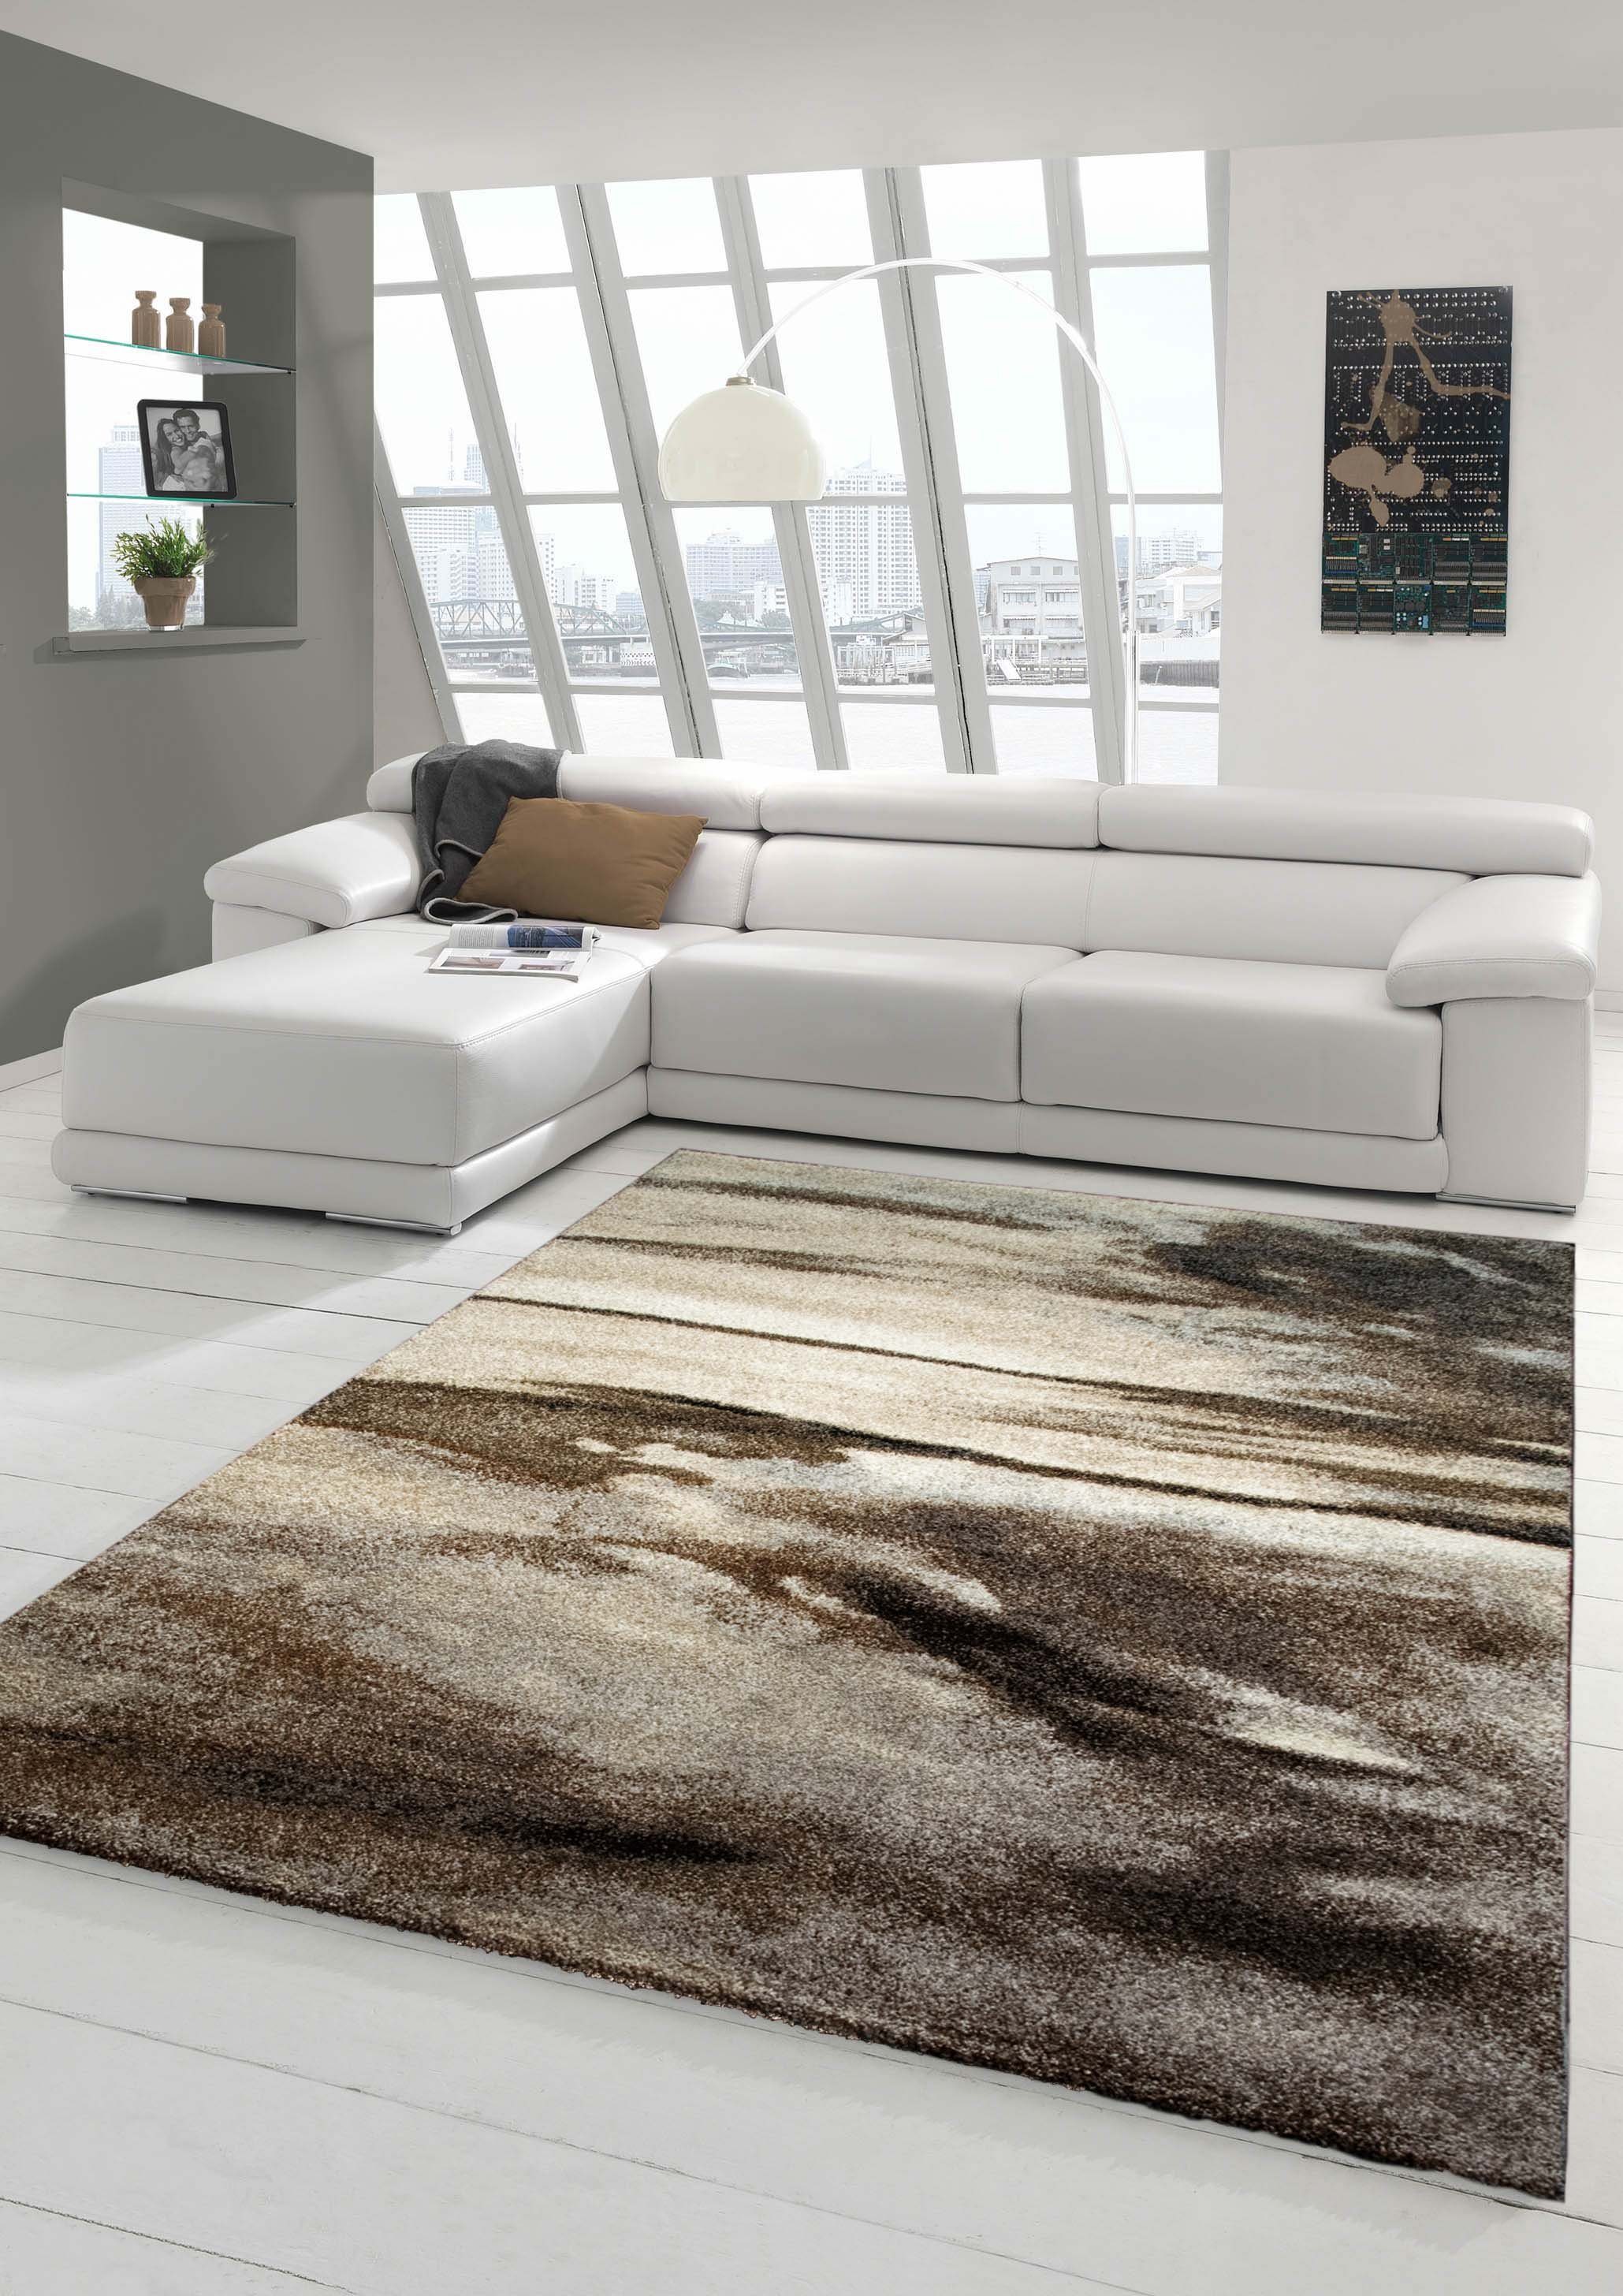 Teppich Designer Teppich Moderner Teppich Wohnzimmer Teppich Kurzflor Teppich Barock Design Meliert in Braun Taupe Grau, Teppich-Traum, rechteckig, Höhe: 18 mm